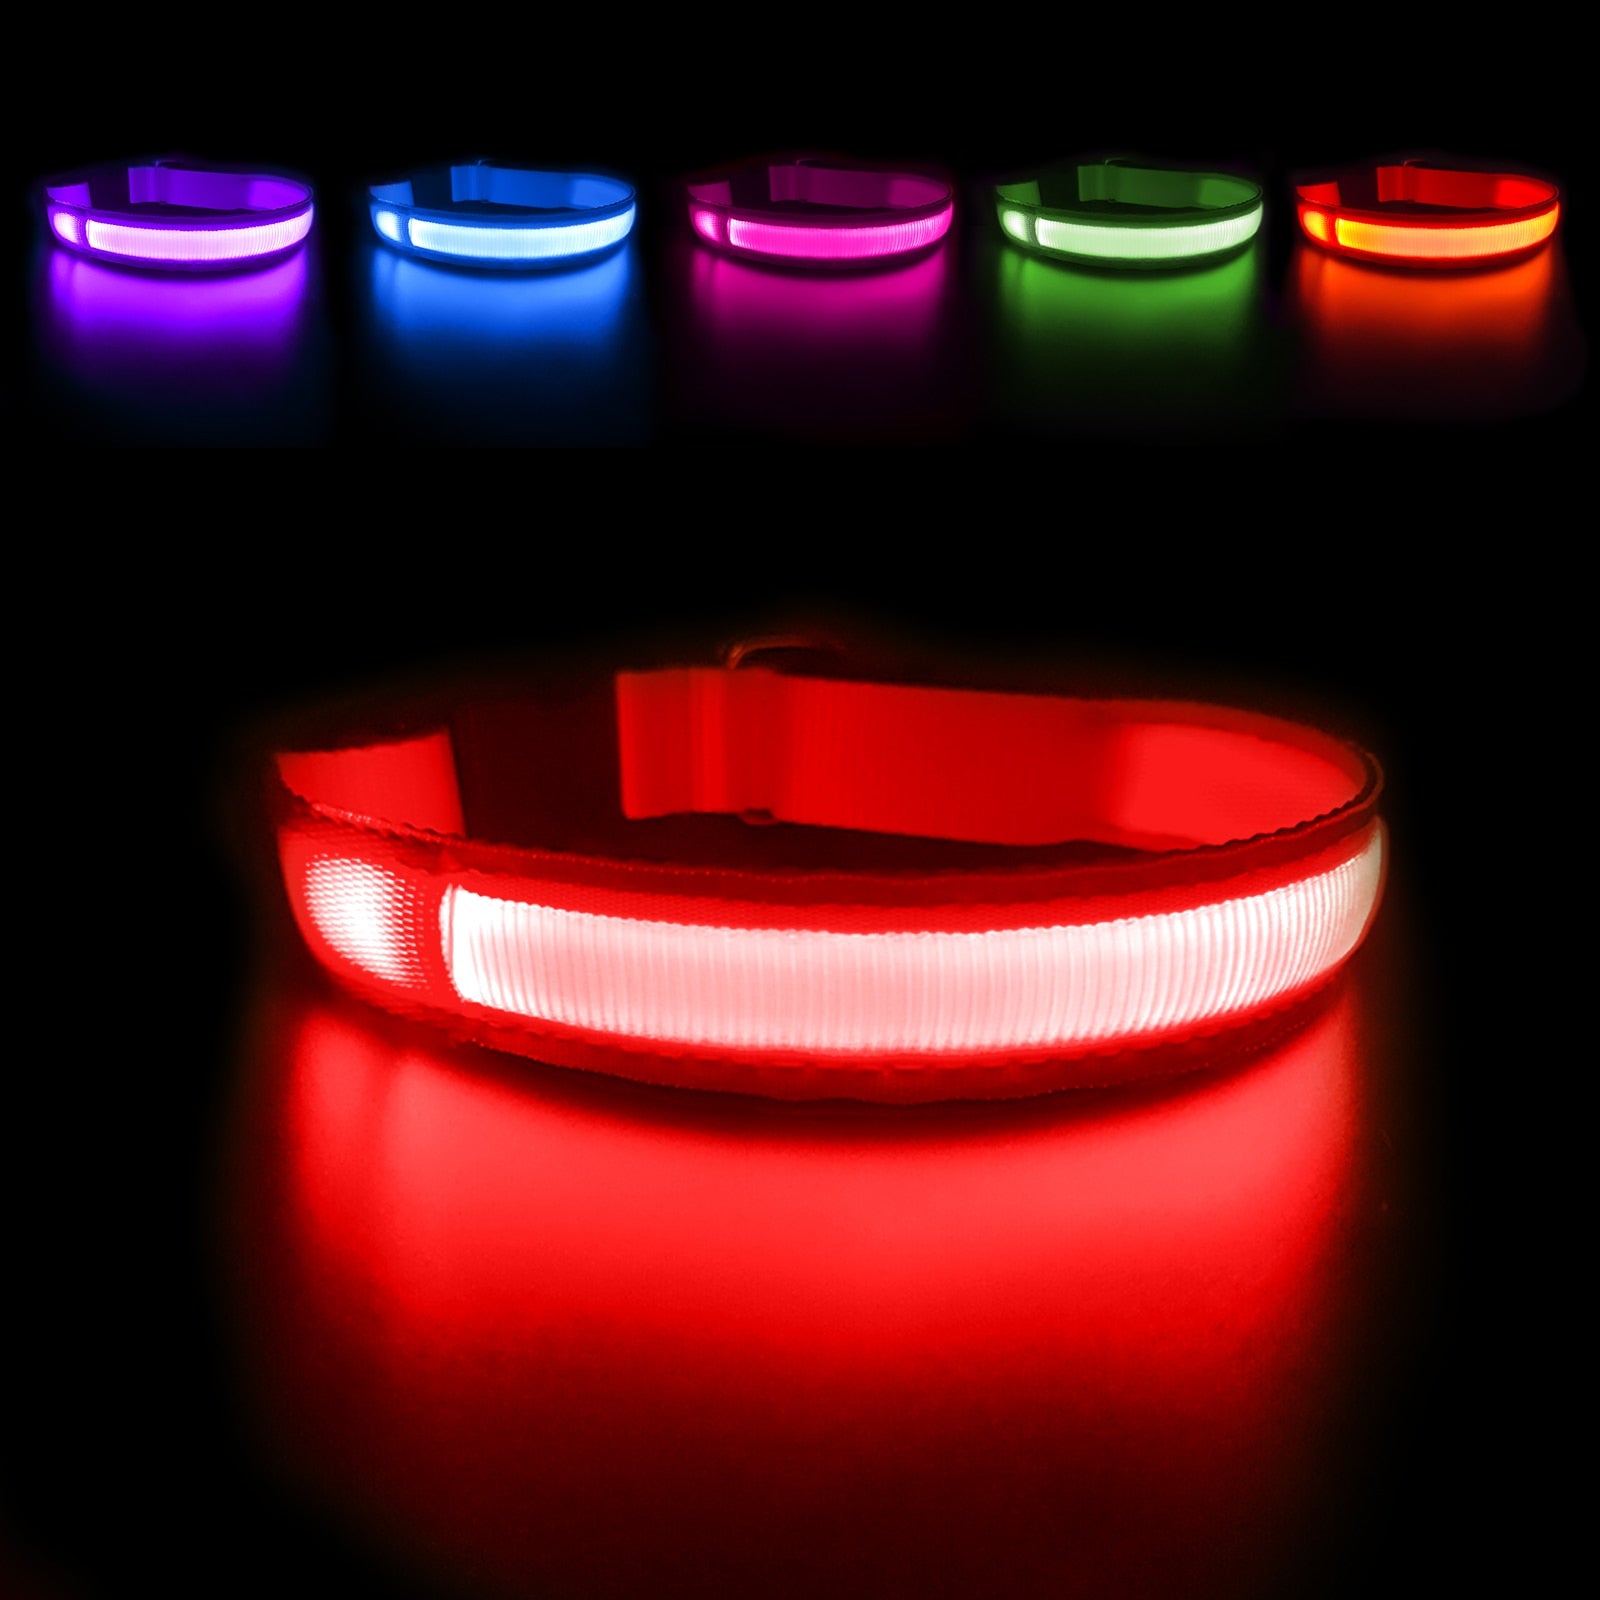 LED Hundehalsband in der Farbe Rot leuchtend.